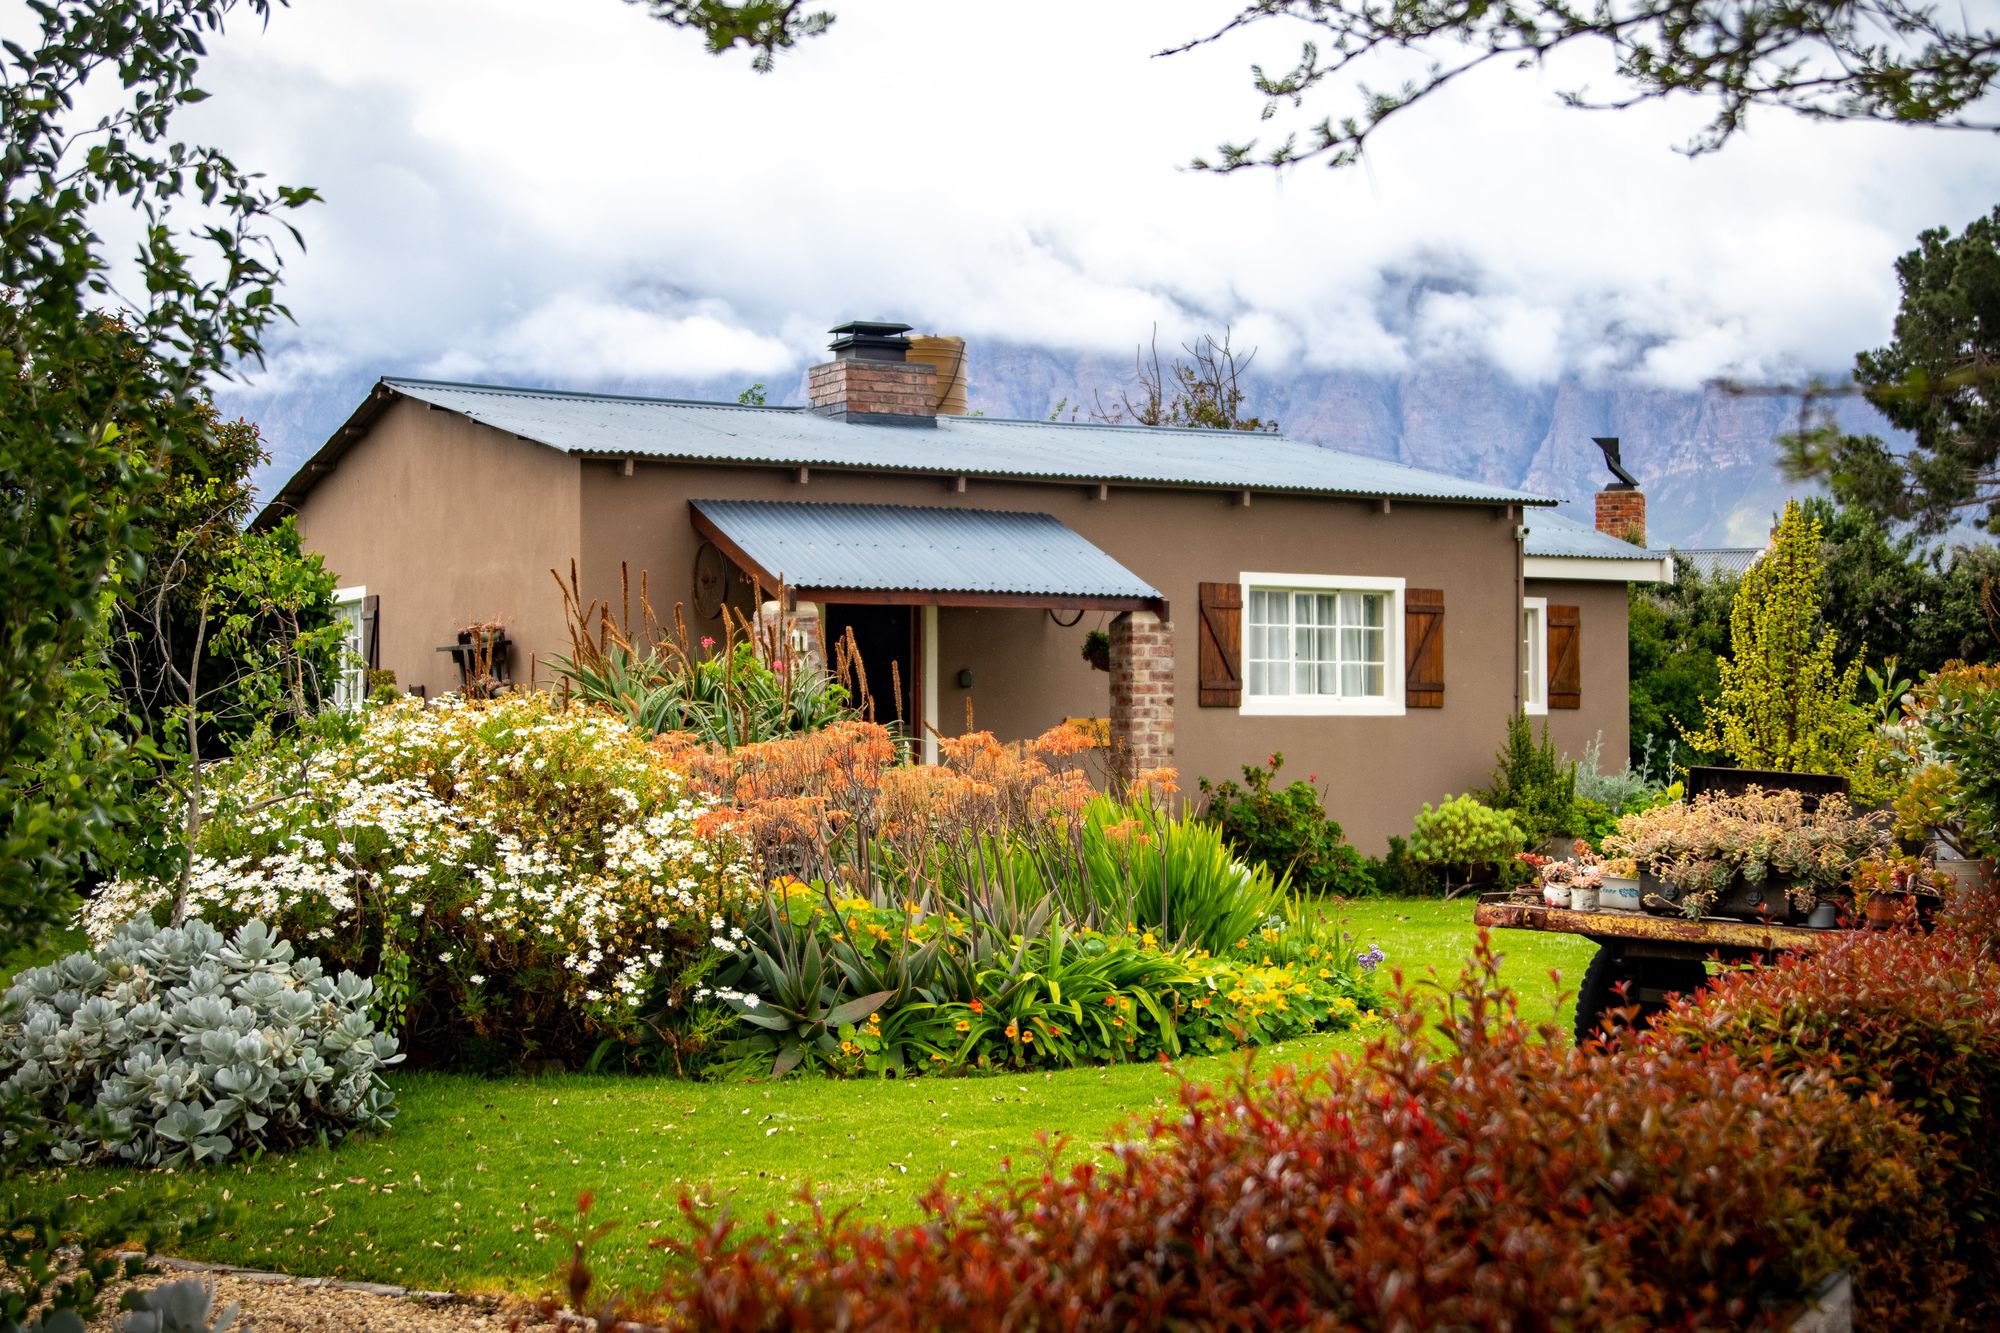 Uma casa pequena com paredes marrons e detalhes de tijolos, cercada por um jardim colorido e diversificado.